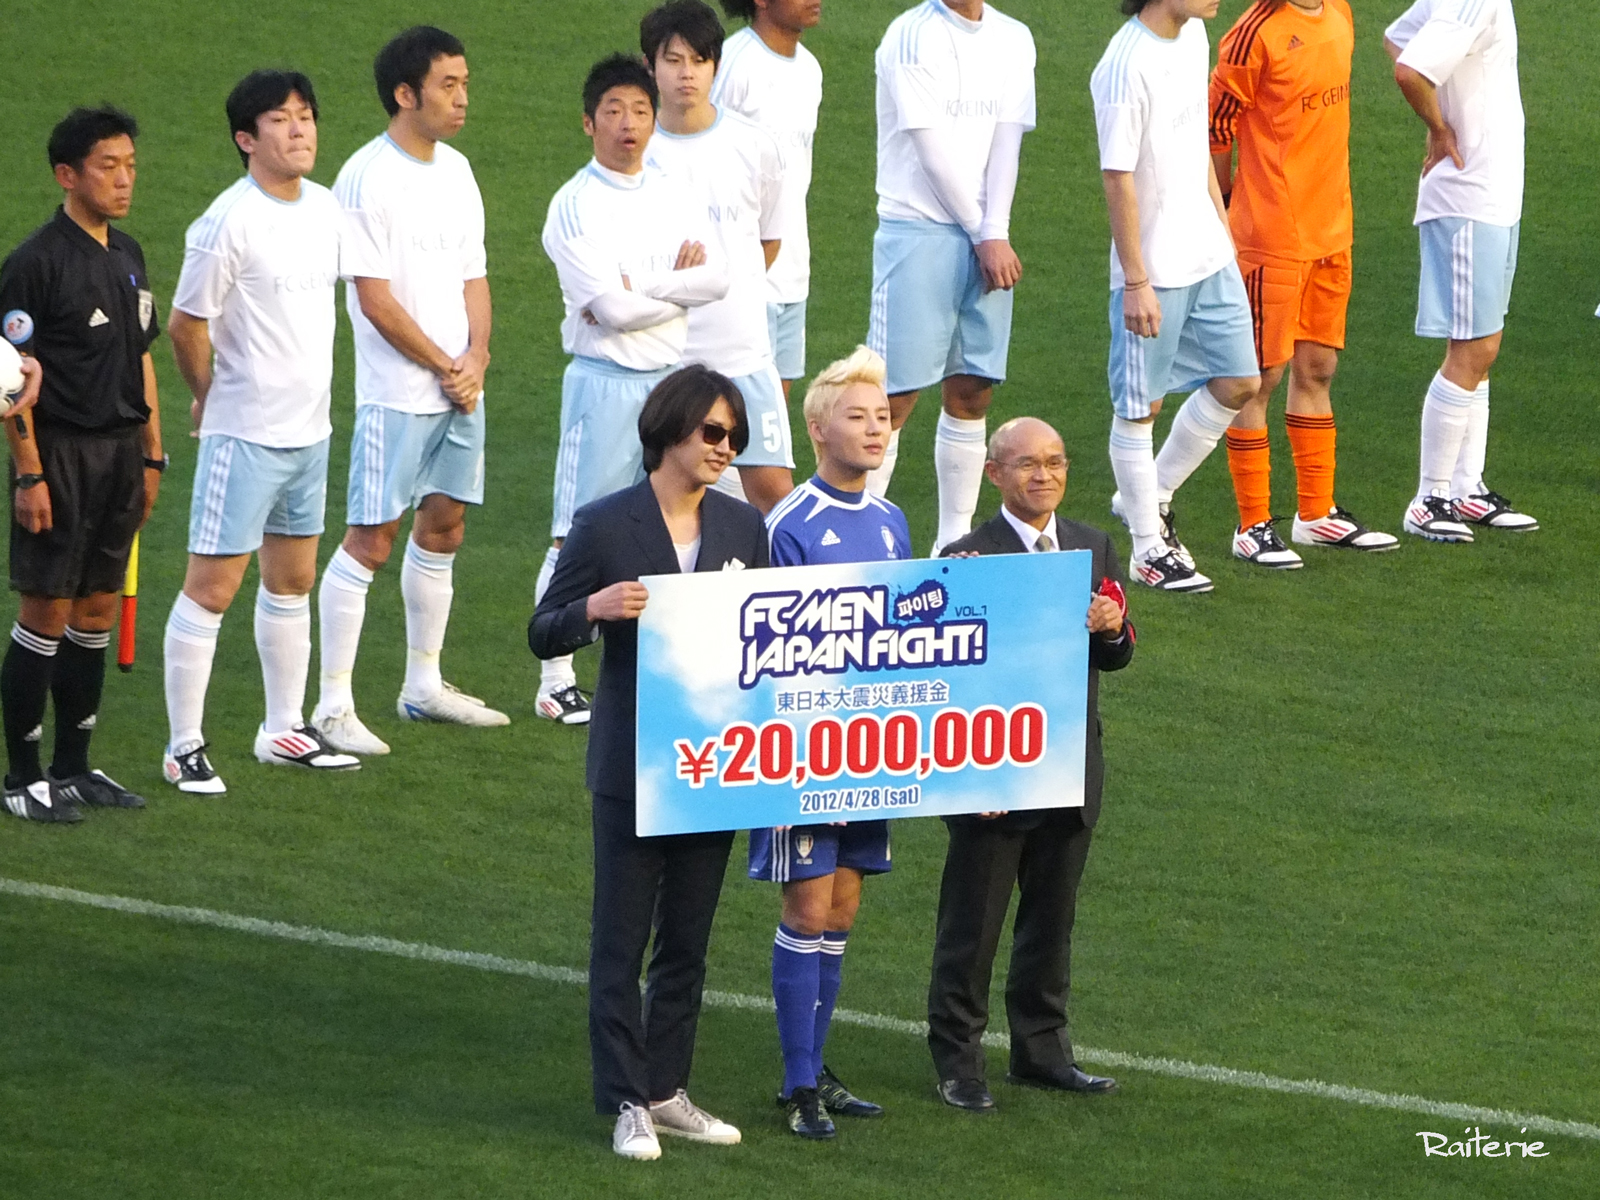 [VID&PIC] 120428 Junsu et le FC Men au match de football caritatif au Japon.   1204300213461488799785109